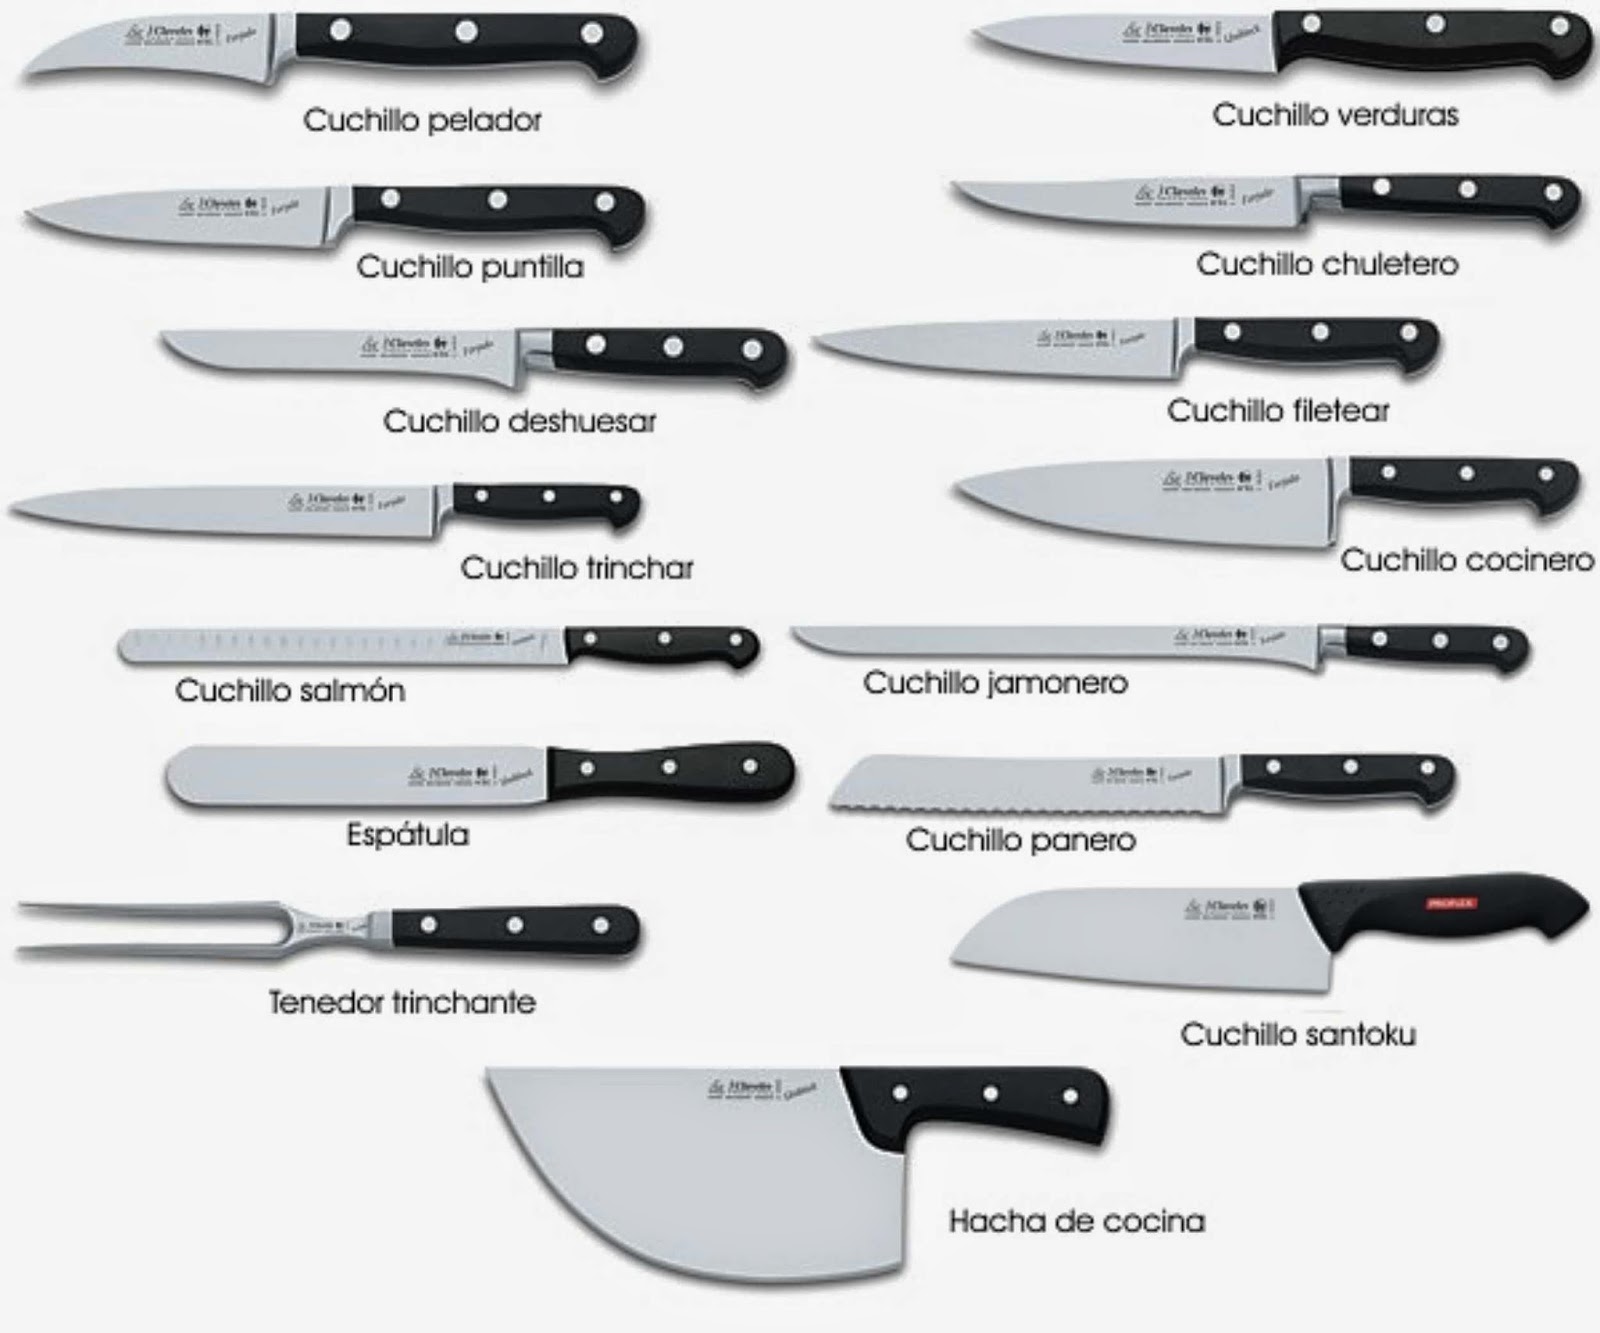 Historia del cuchillo